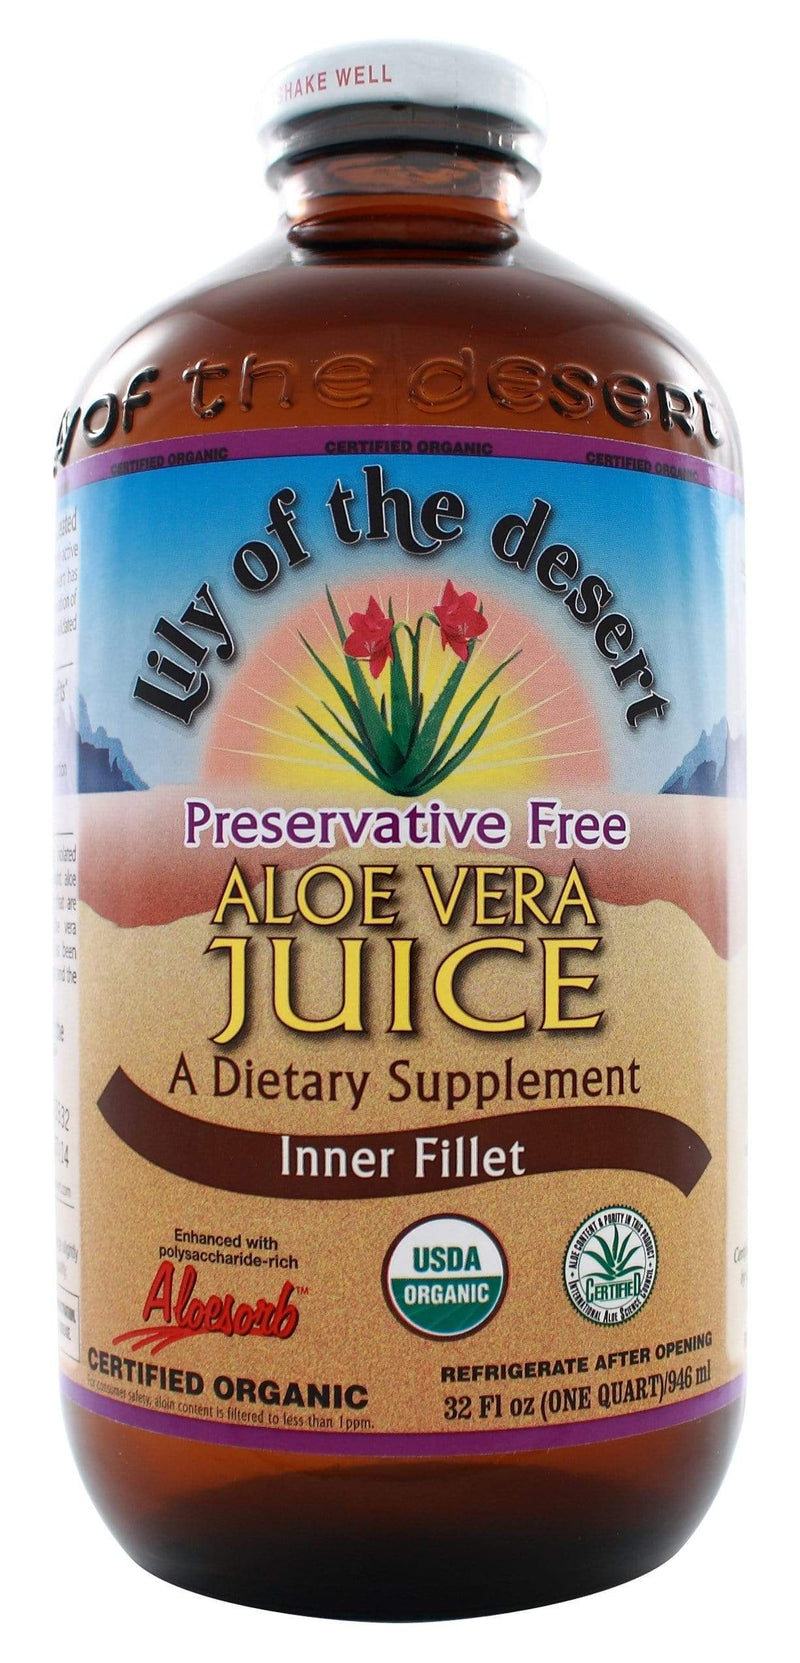 Lily of the Desert, Aloe Vera Juice, Inner Fillet, 946mL (32 fl oz)